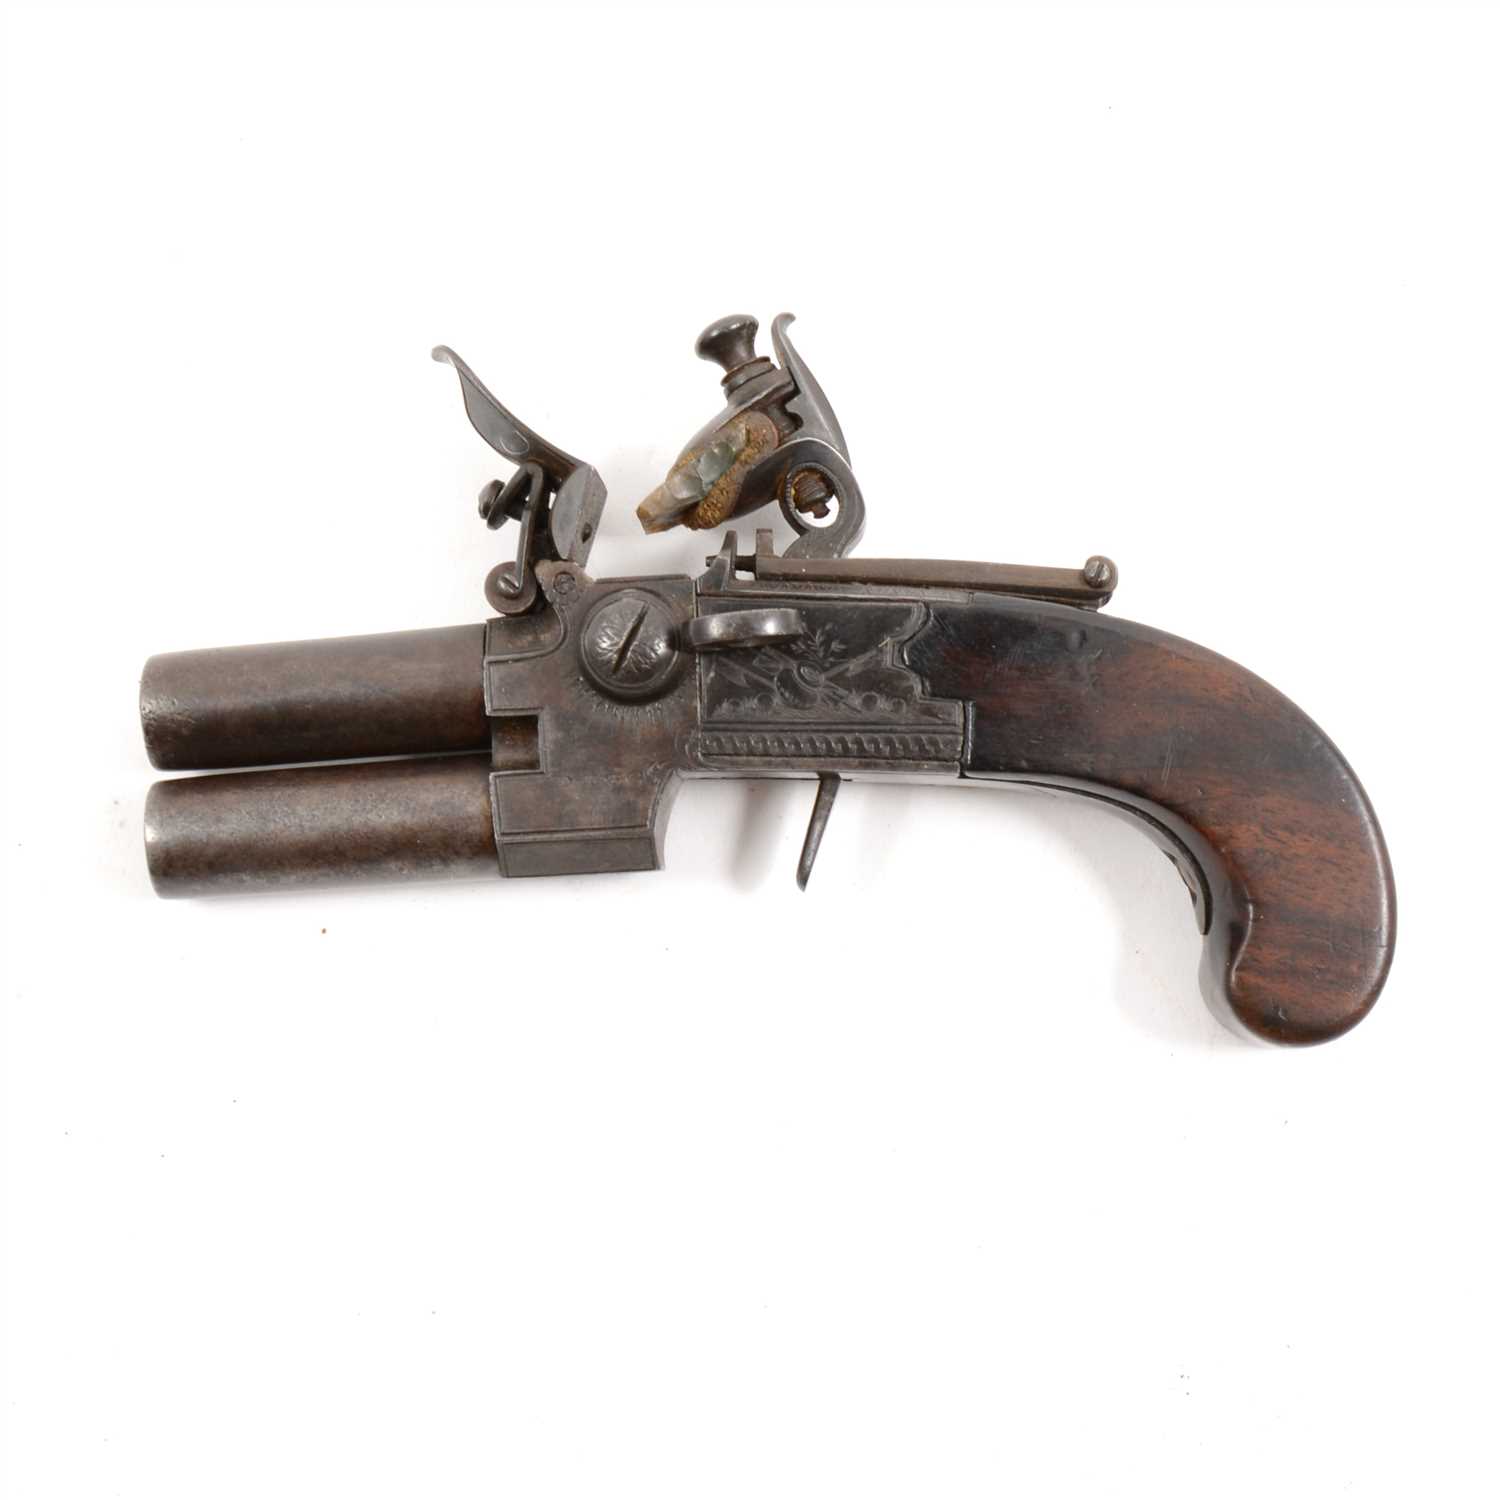 Lot 139 - Double barrel flintlock pistol, by Egg, London